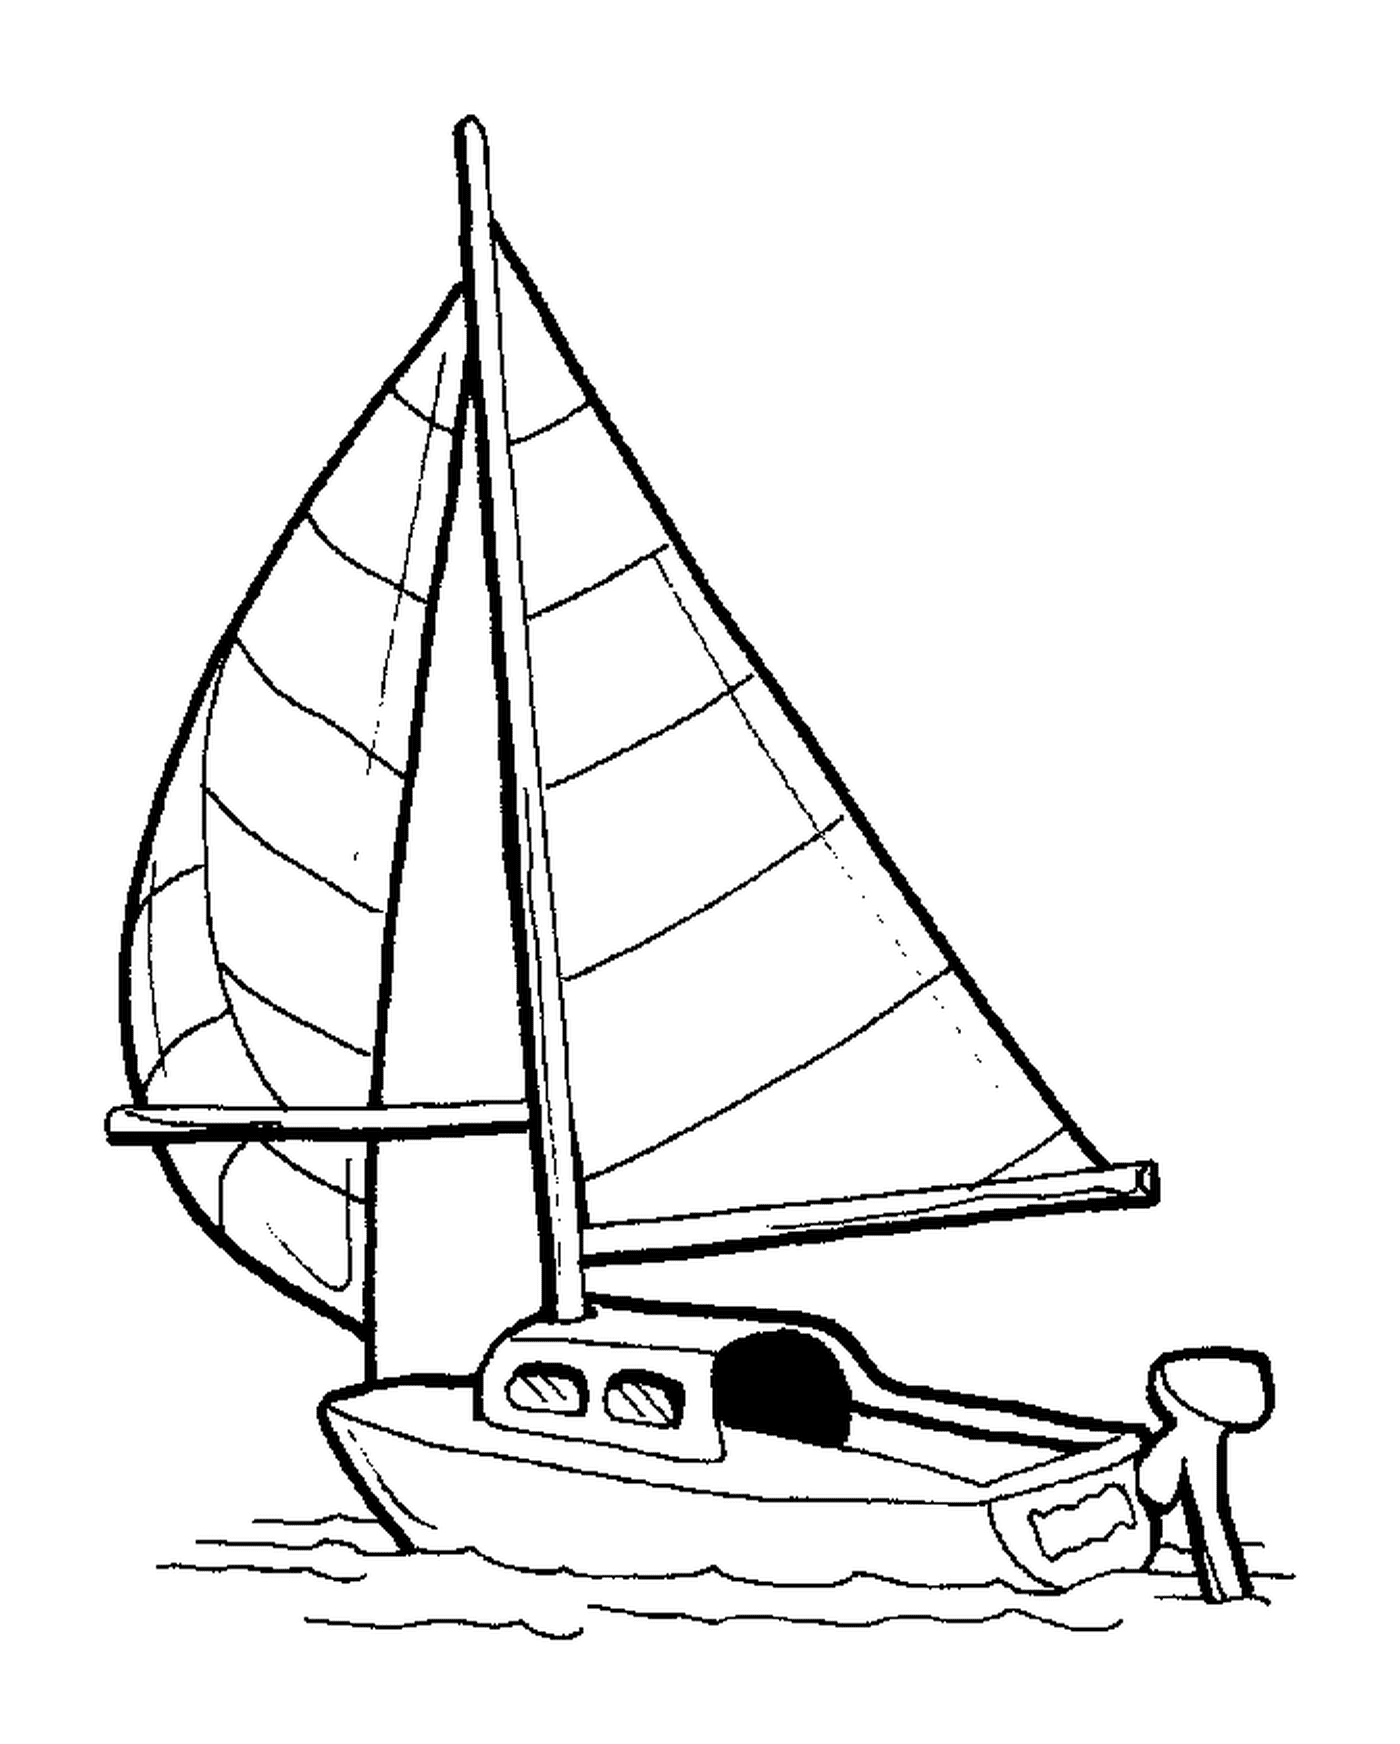  Piccola barca a vela raffigurata in un disegno 